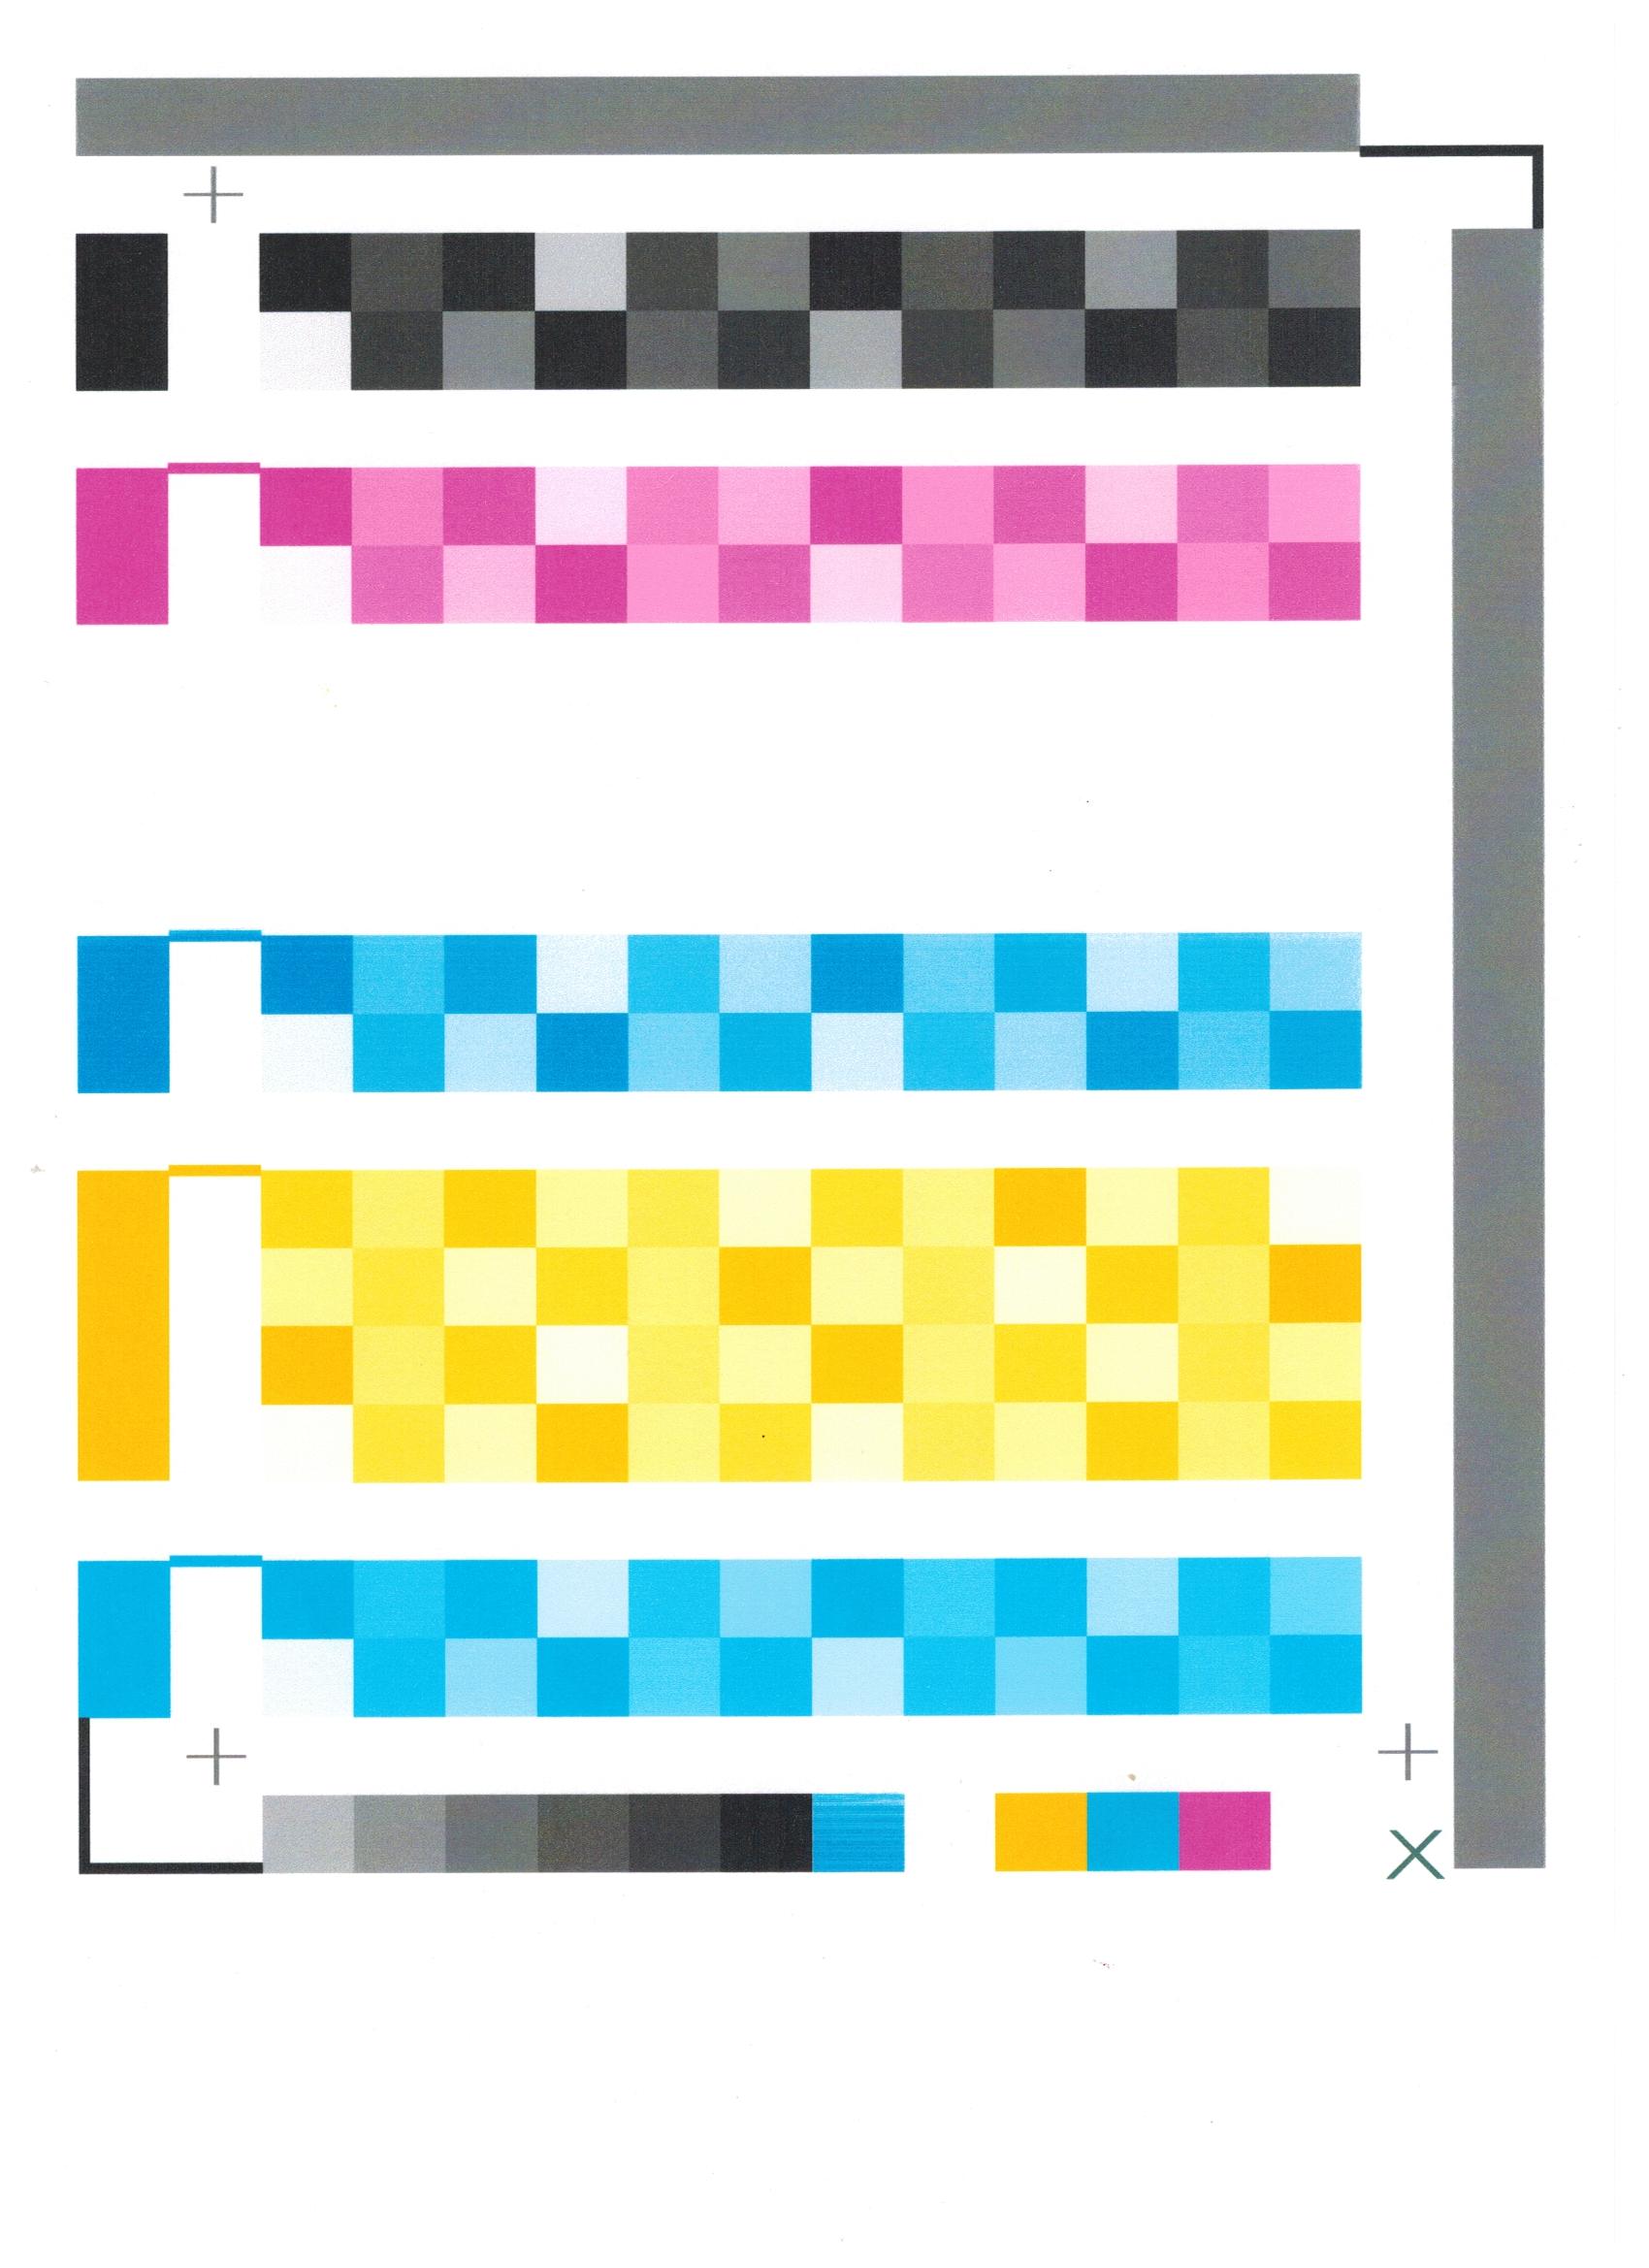 Solucionado: Mi impresora no imprime bien los colores - Comunidad de  Soporte HP - 751615